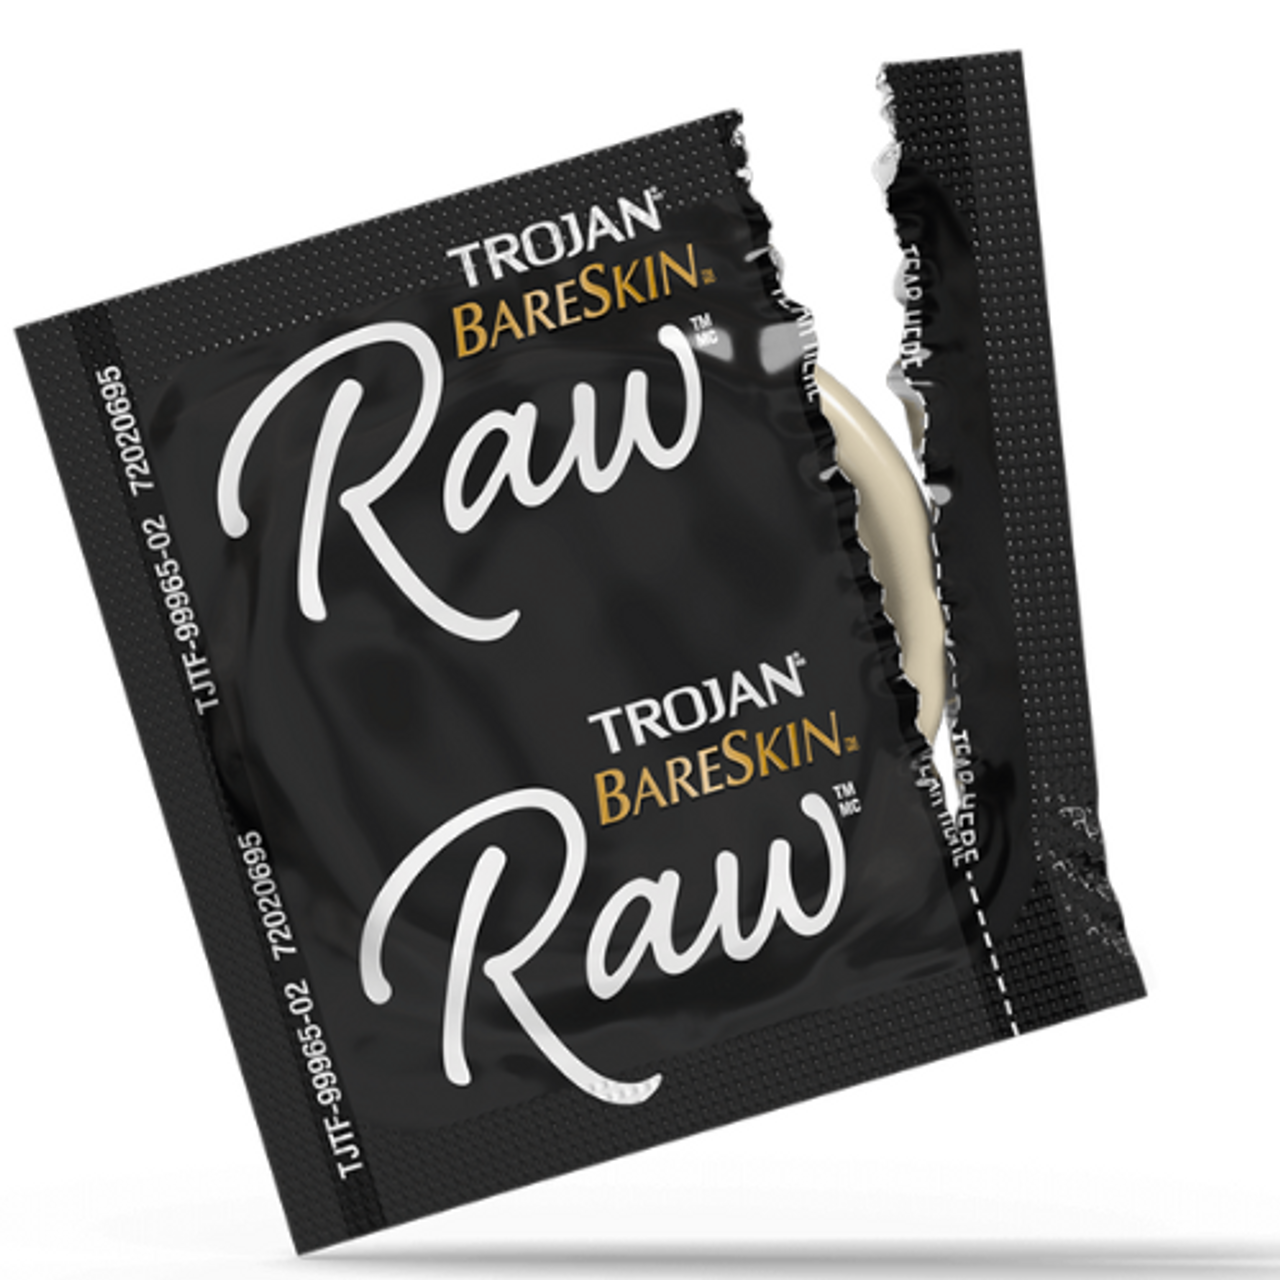 Trojan Bareskin Raw Condoms Condom Depot 